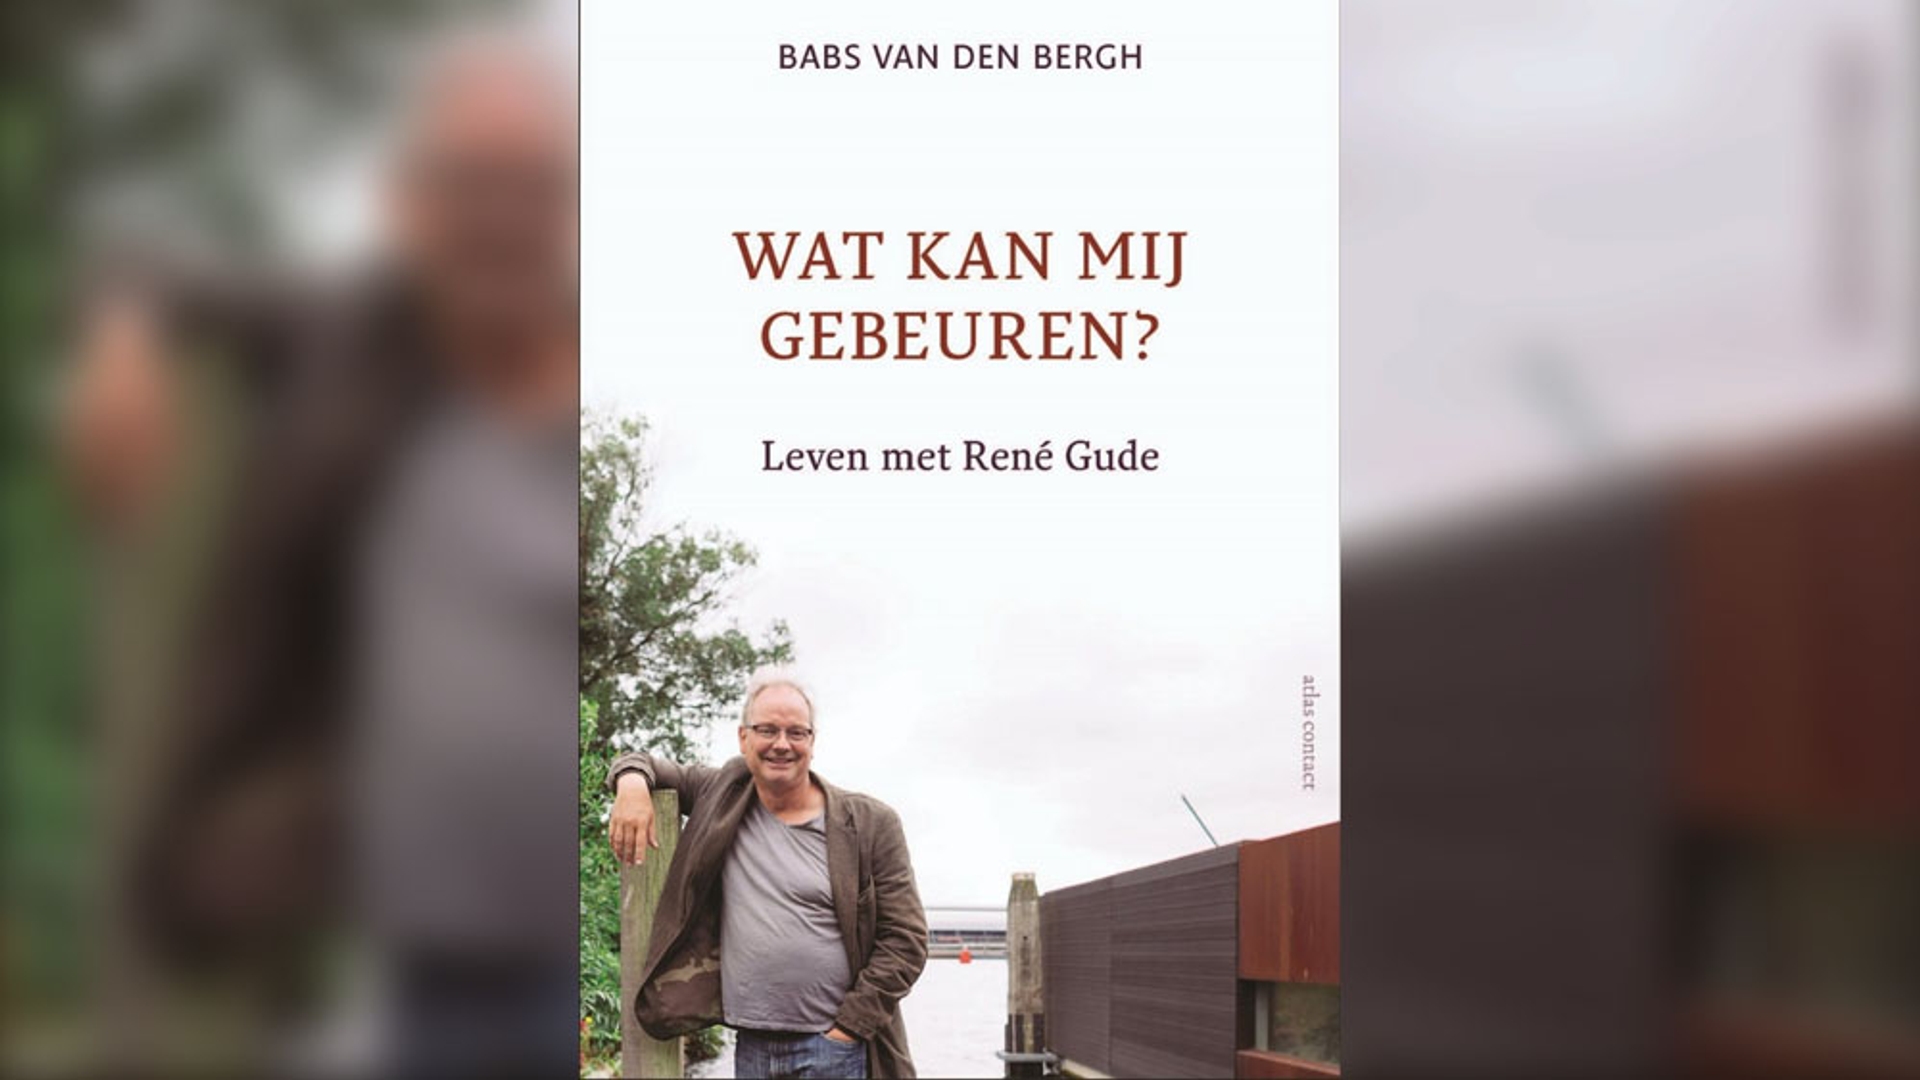 Boek Babs van den Bergh Gude